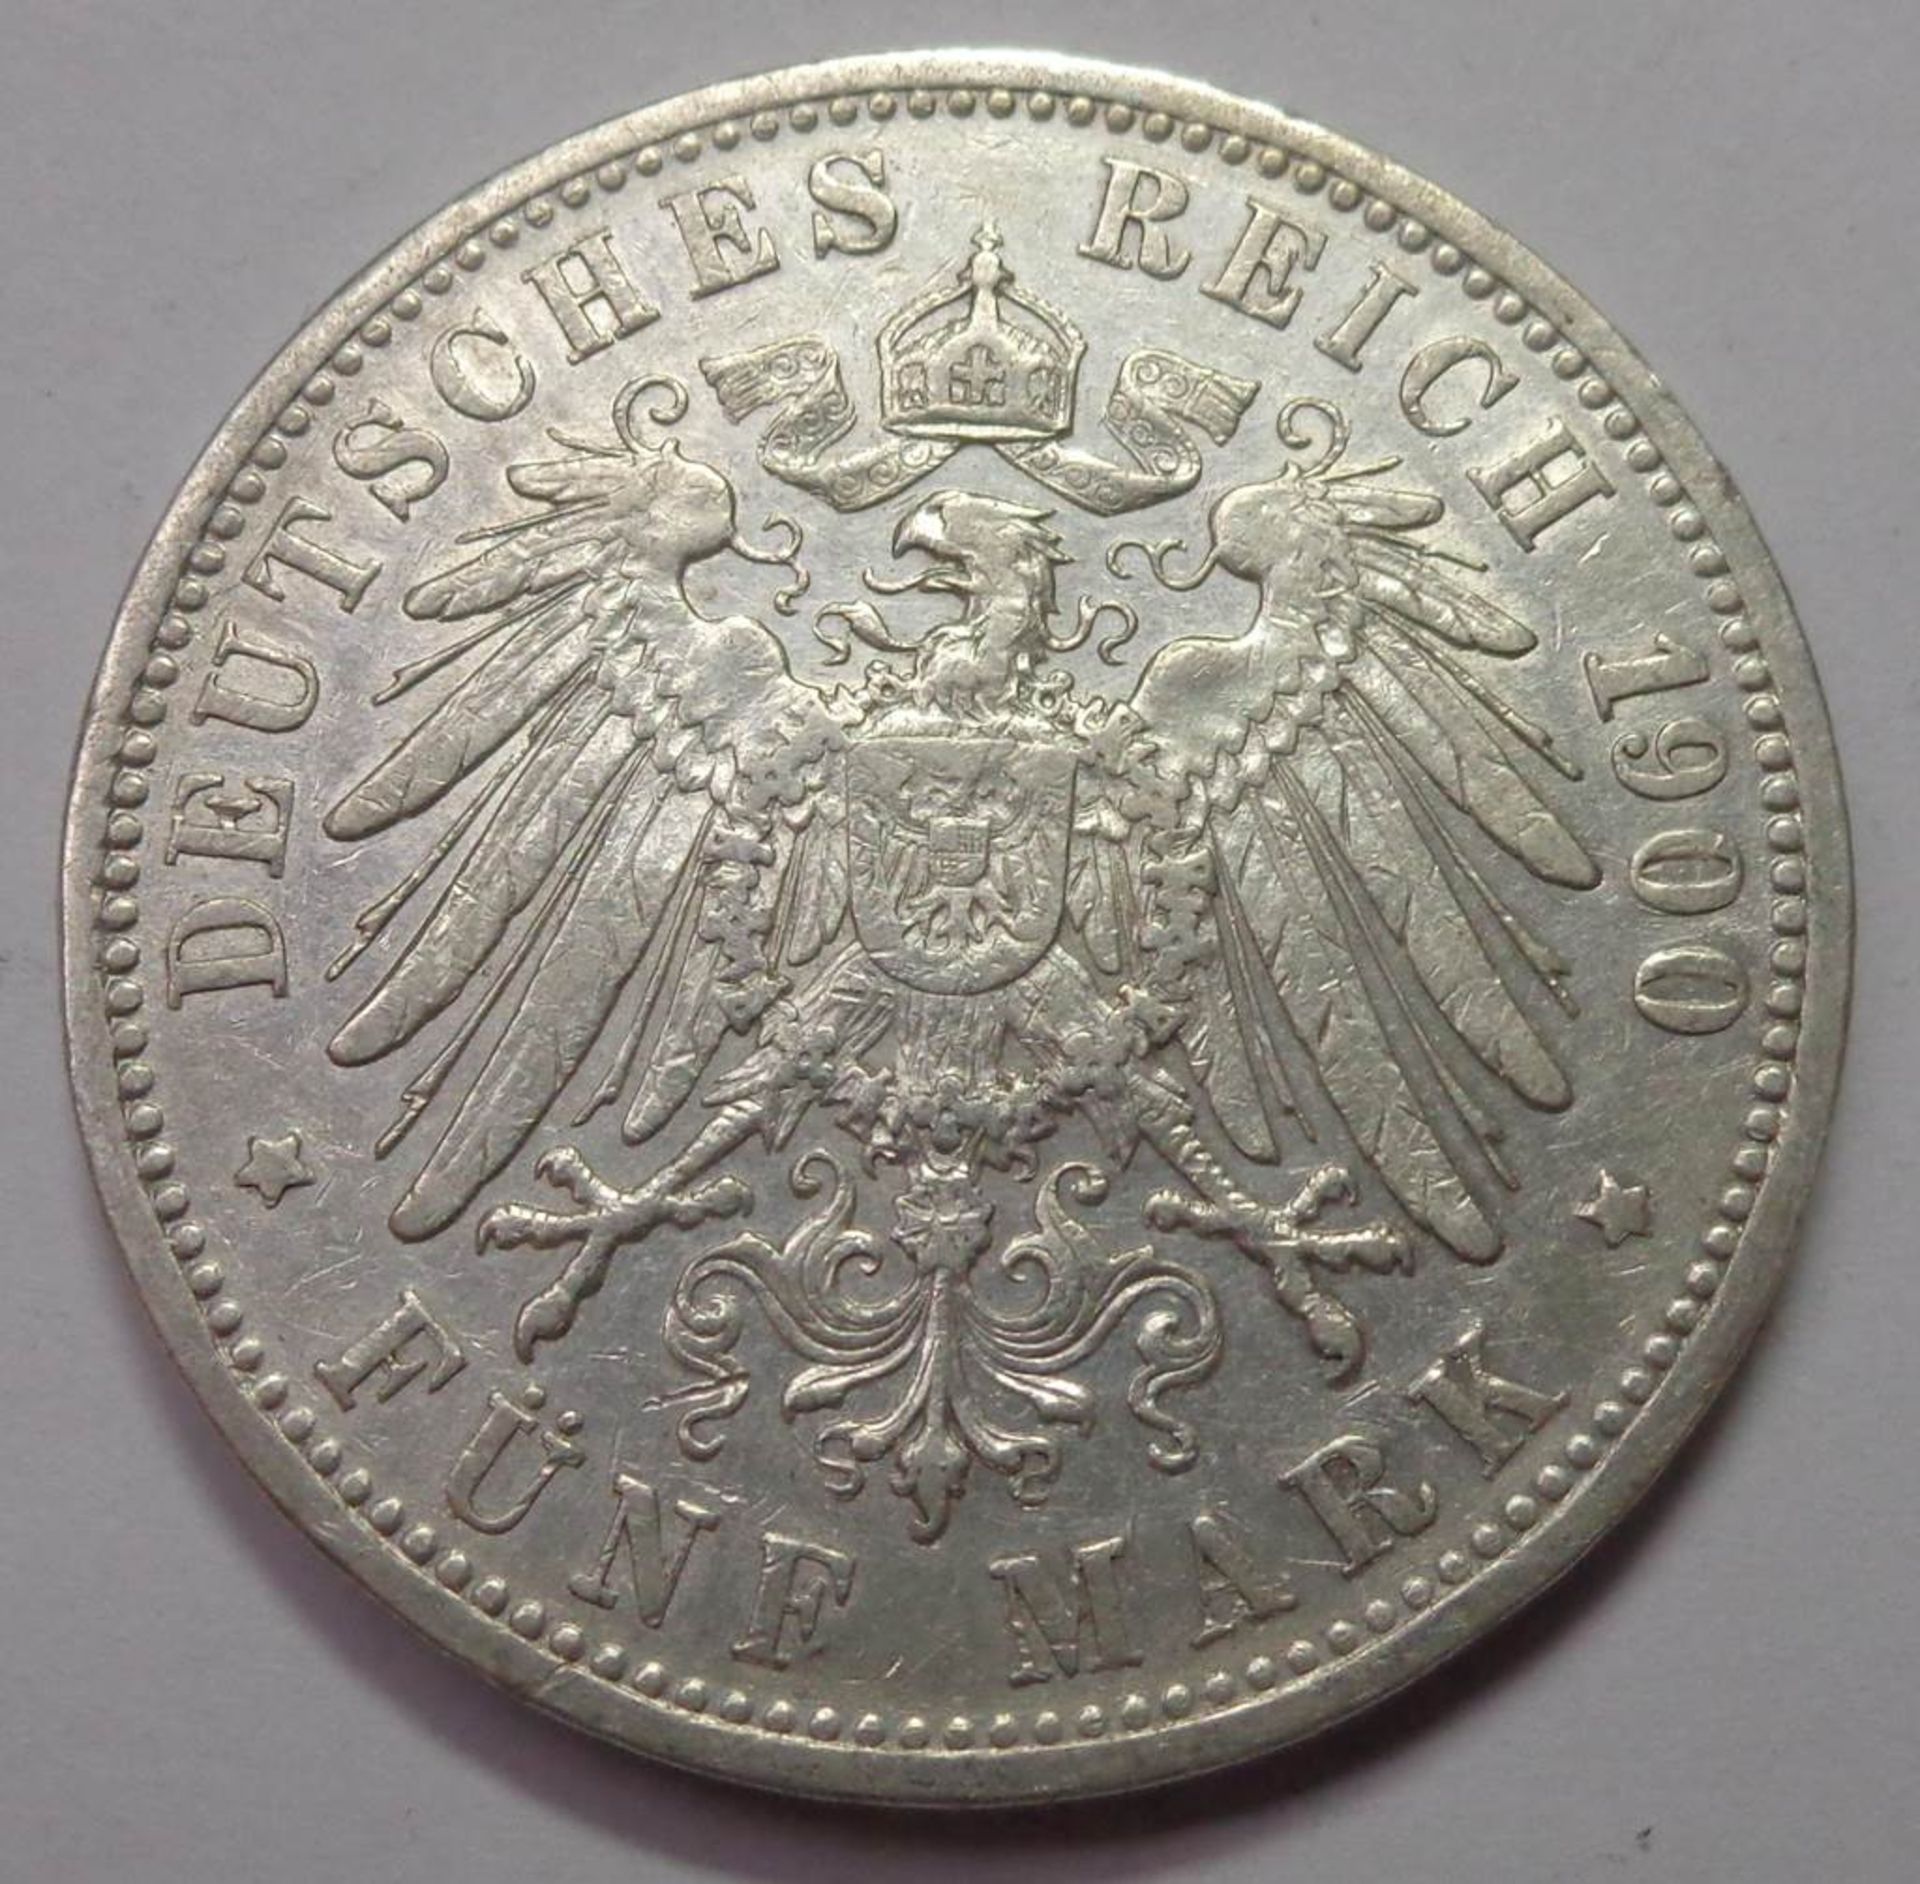 Fünf Mark, Deutsches Reich 1900 G, Friedrich Grosherzog v. Baden, vz., 27,58 gr - Bild 2 aus 2